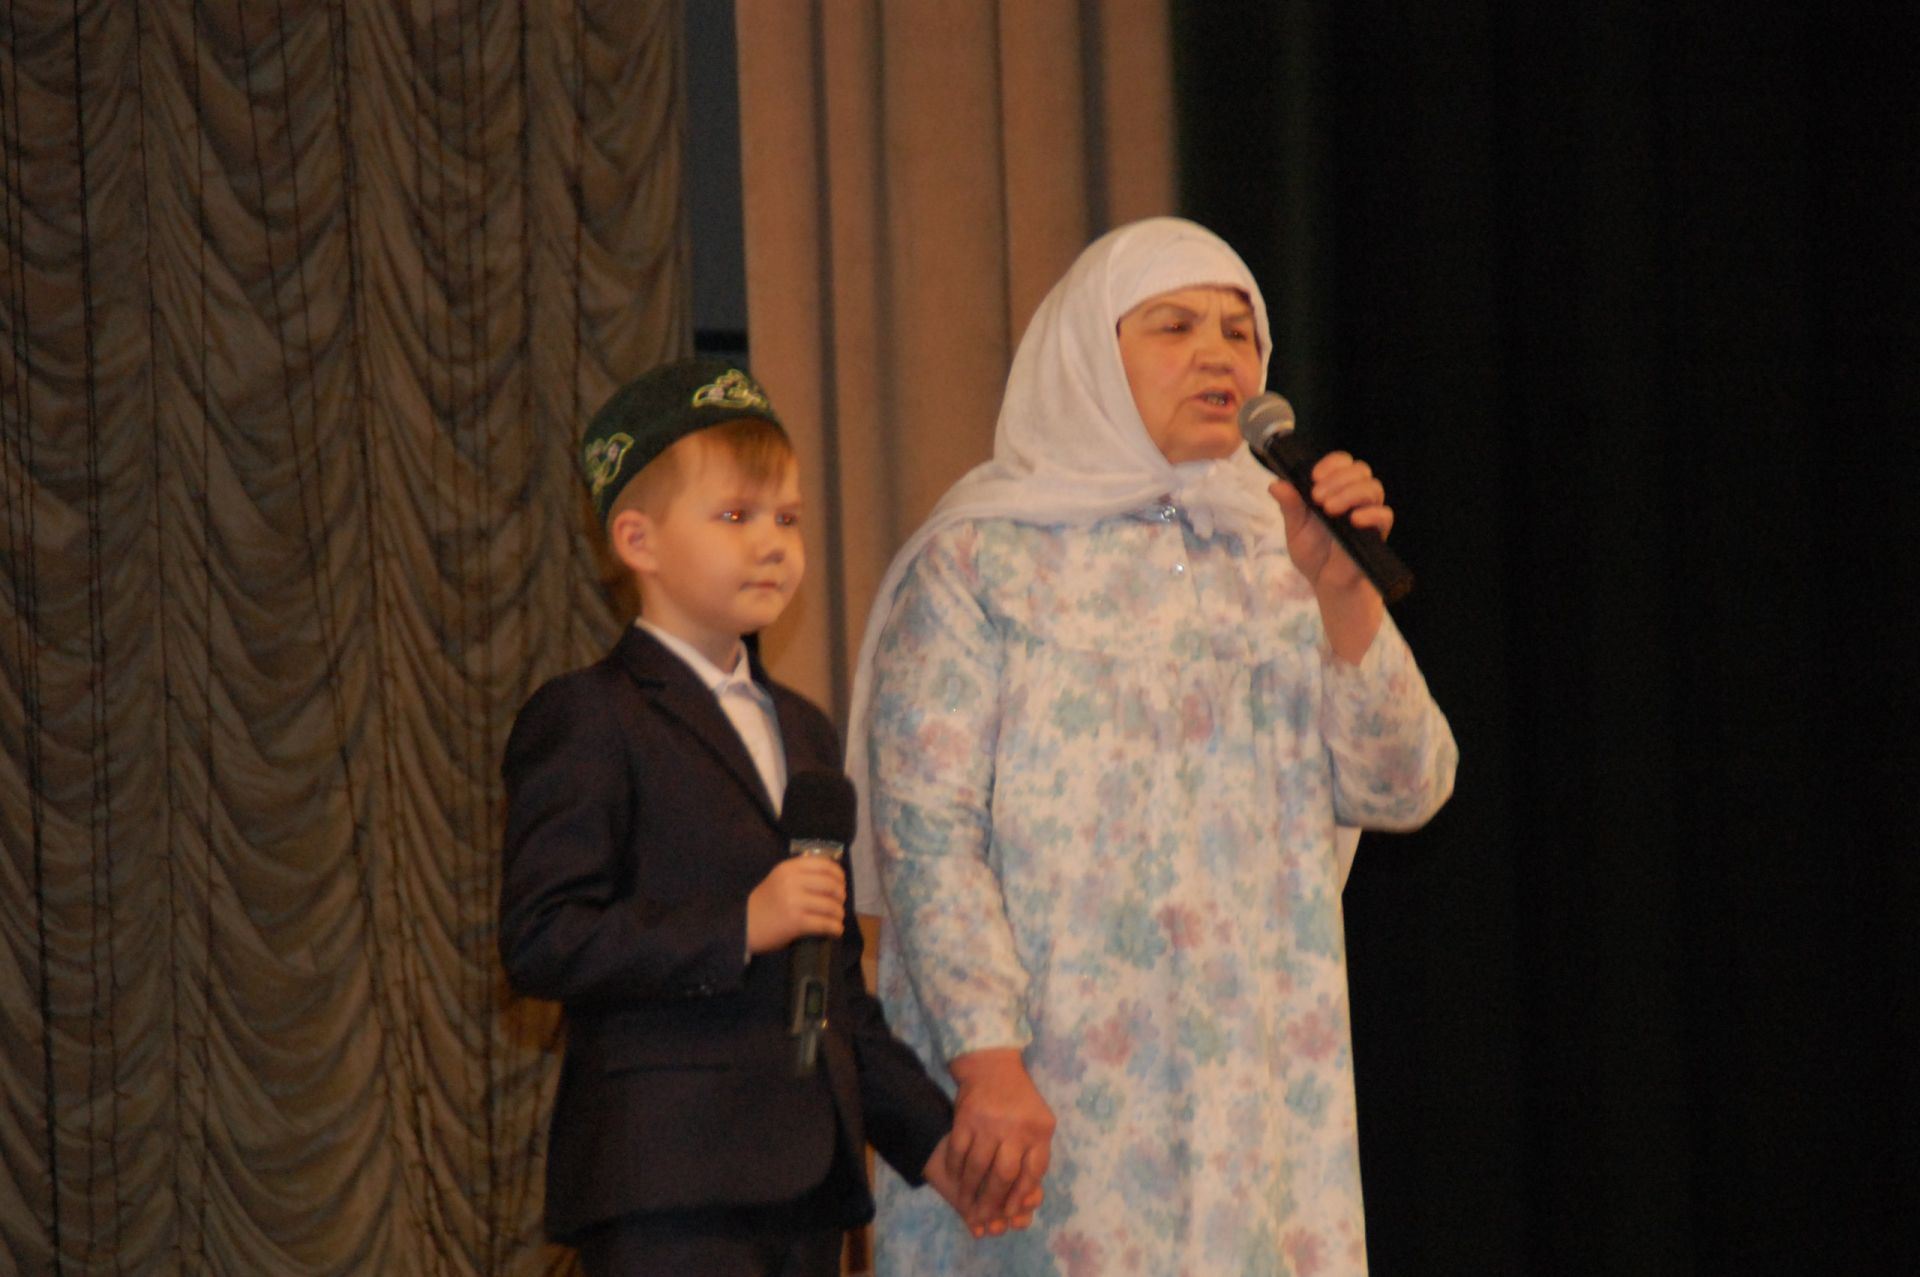 «Тукаевские чтения» посетили ученики всех школ города